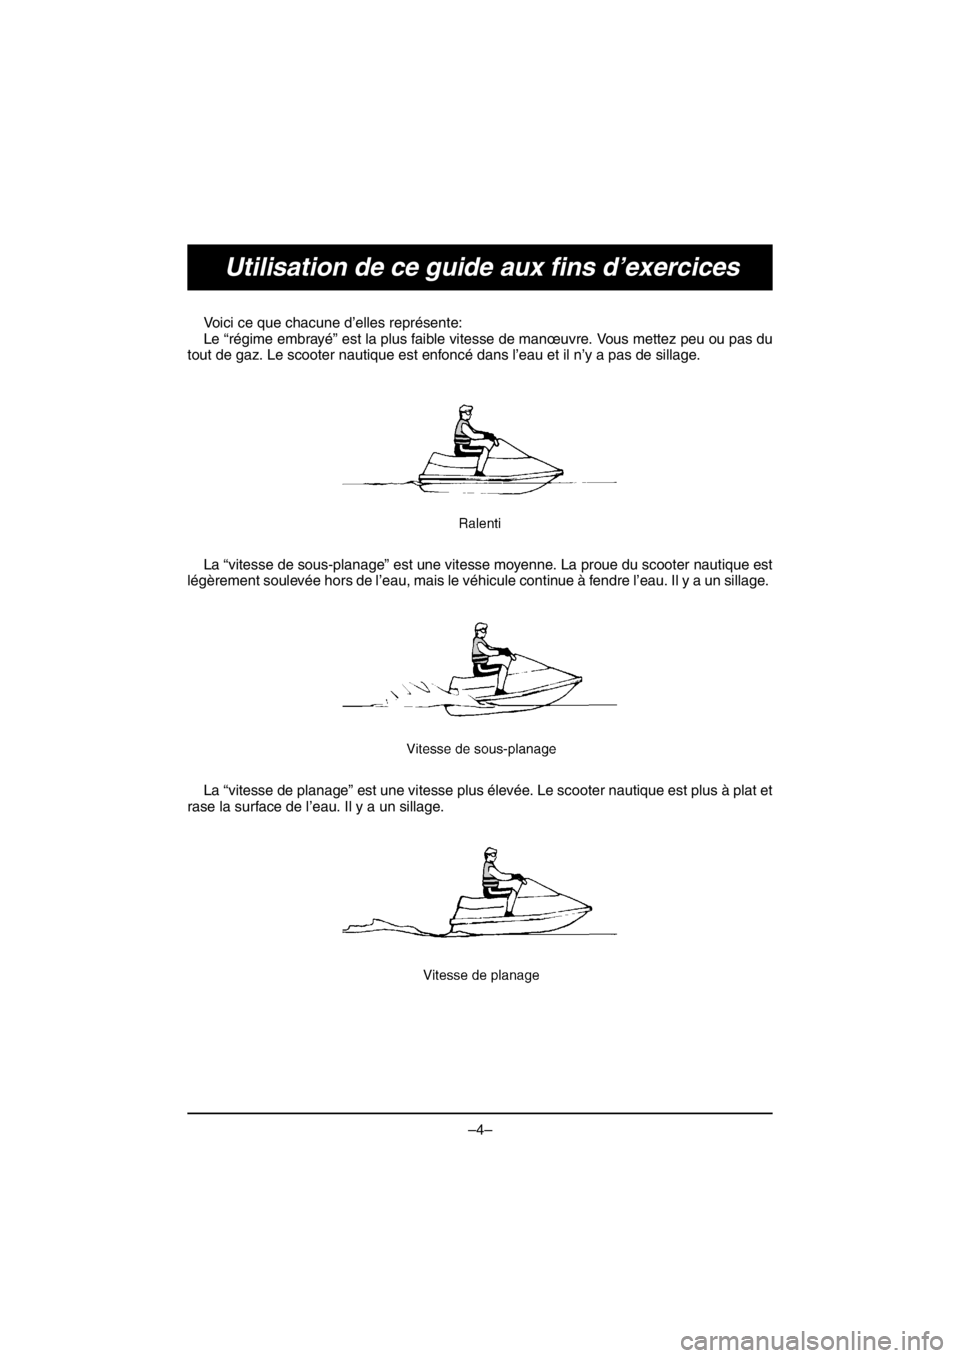 YAMAHA V1 2016 Owners Guide –4–
Utilisation de ce guide aux fins d’exercices
Voici ce que chacune d’elles représente: 
Le “régime embrayé” est la plus faible vitesse de manœuvre. Vous mettez peu ou pas du
tout de